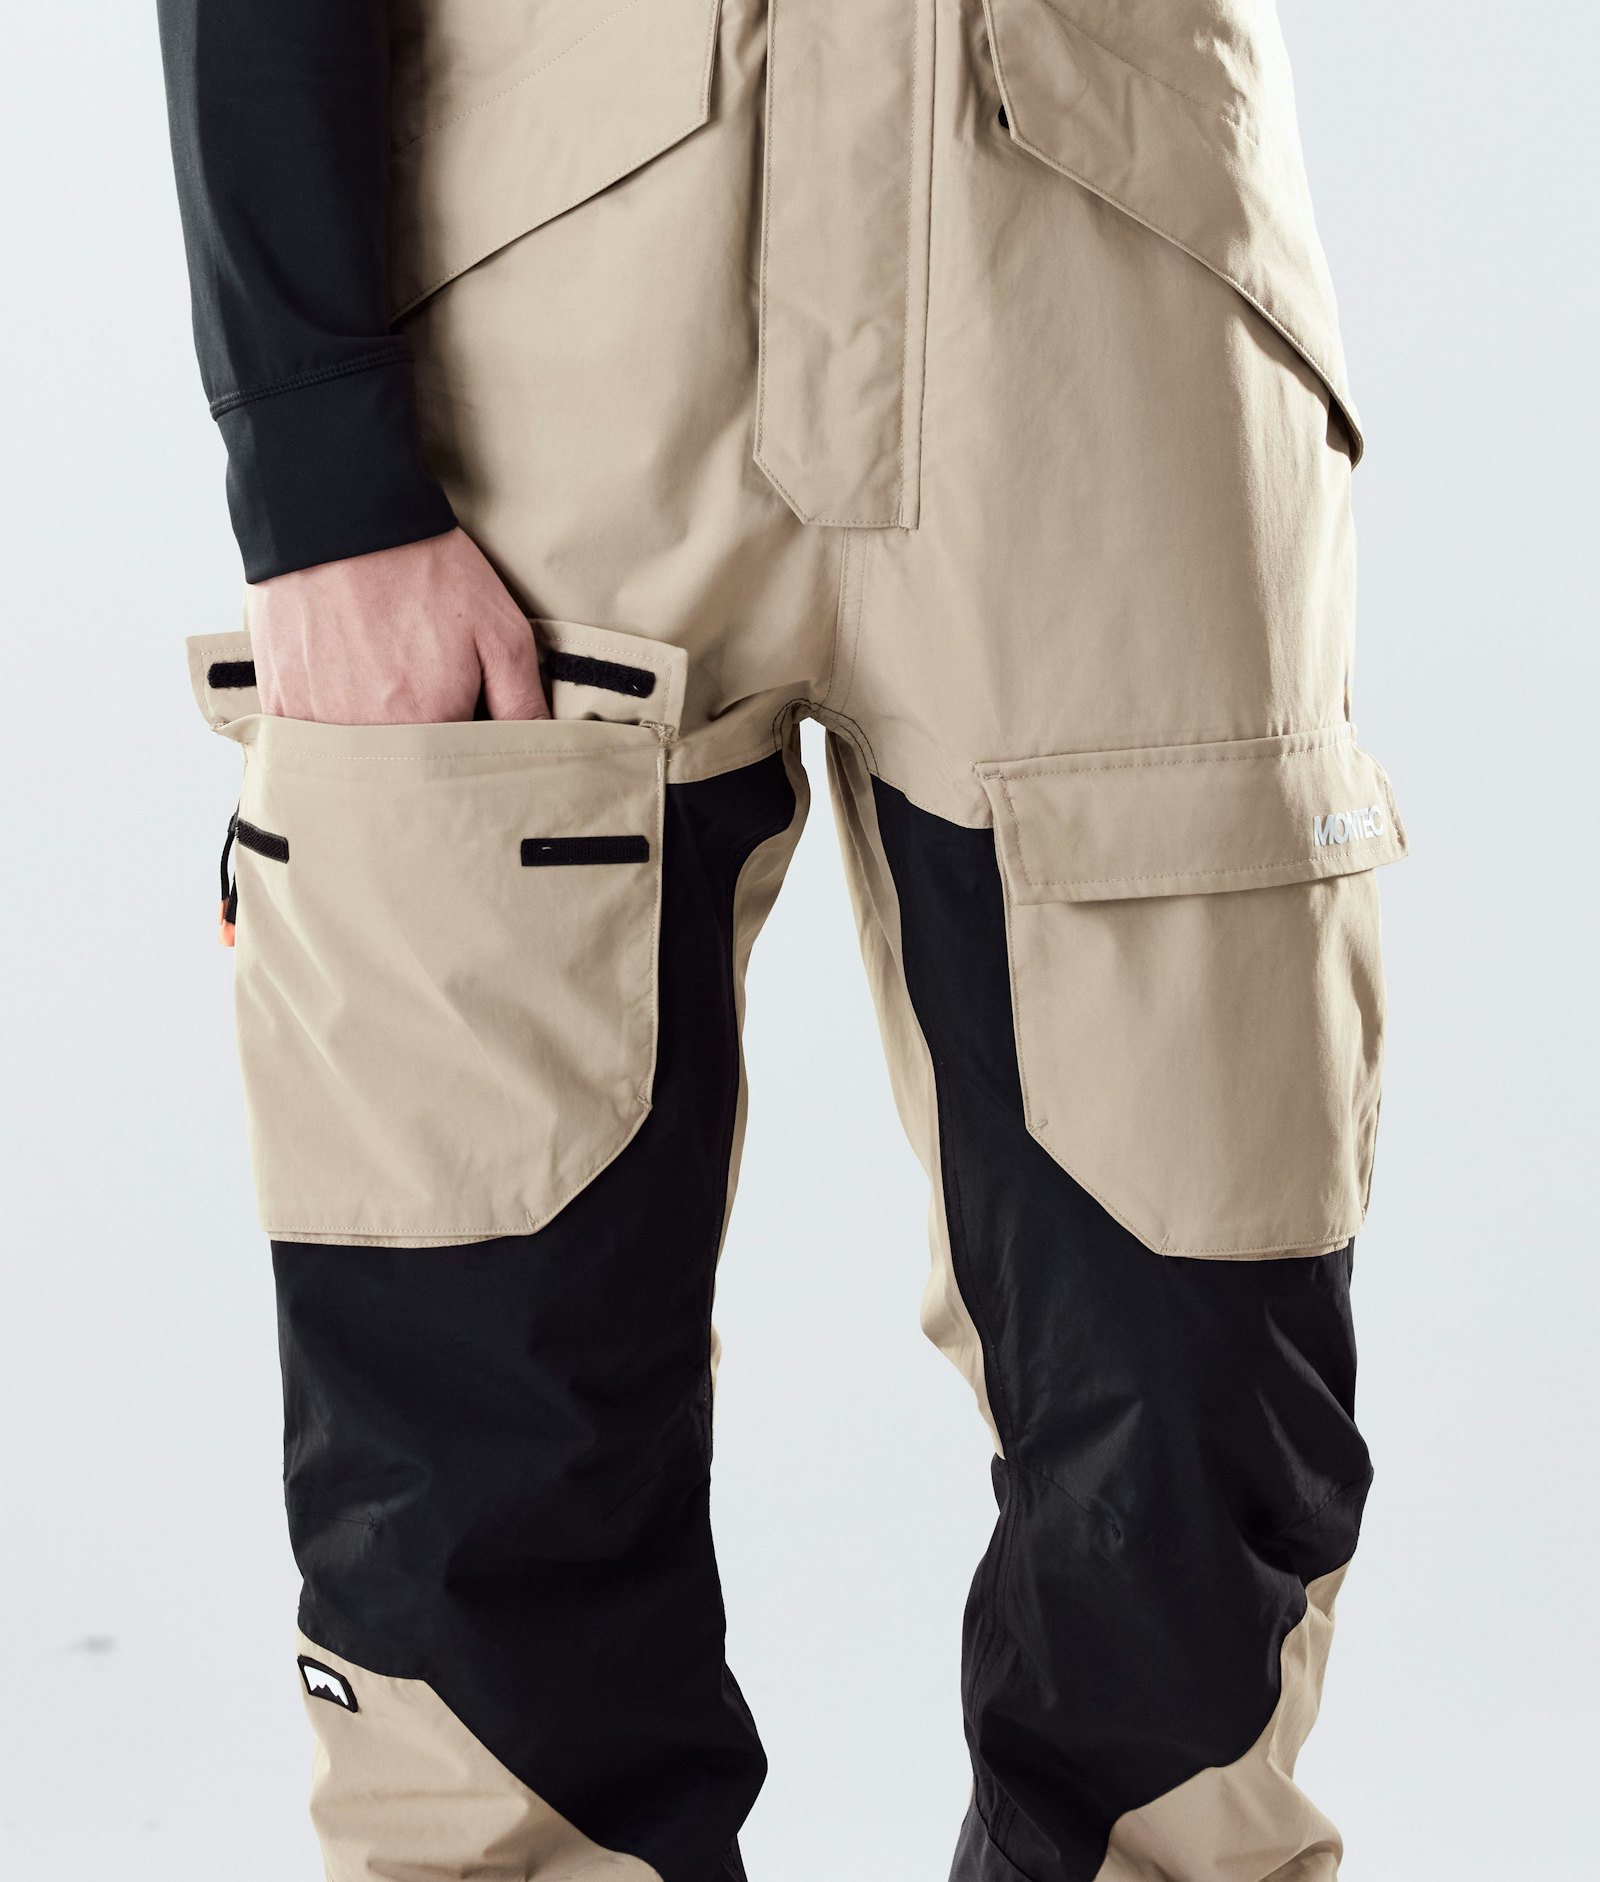 Montec Fawk 2020 Spodnie Narciarskie Mężczyźni Khaki/Black